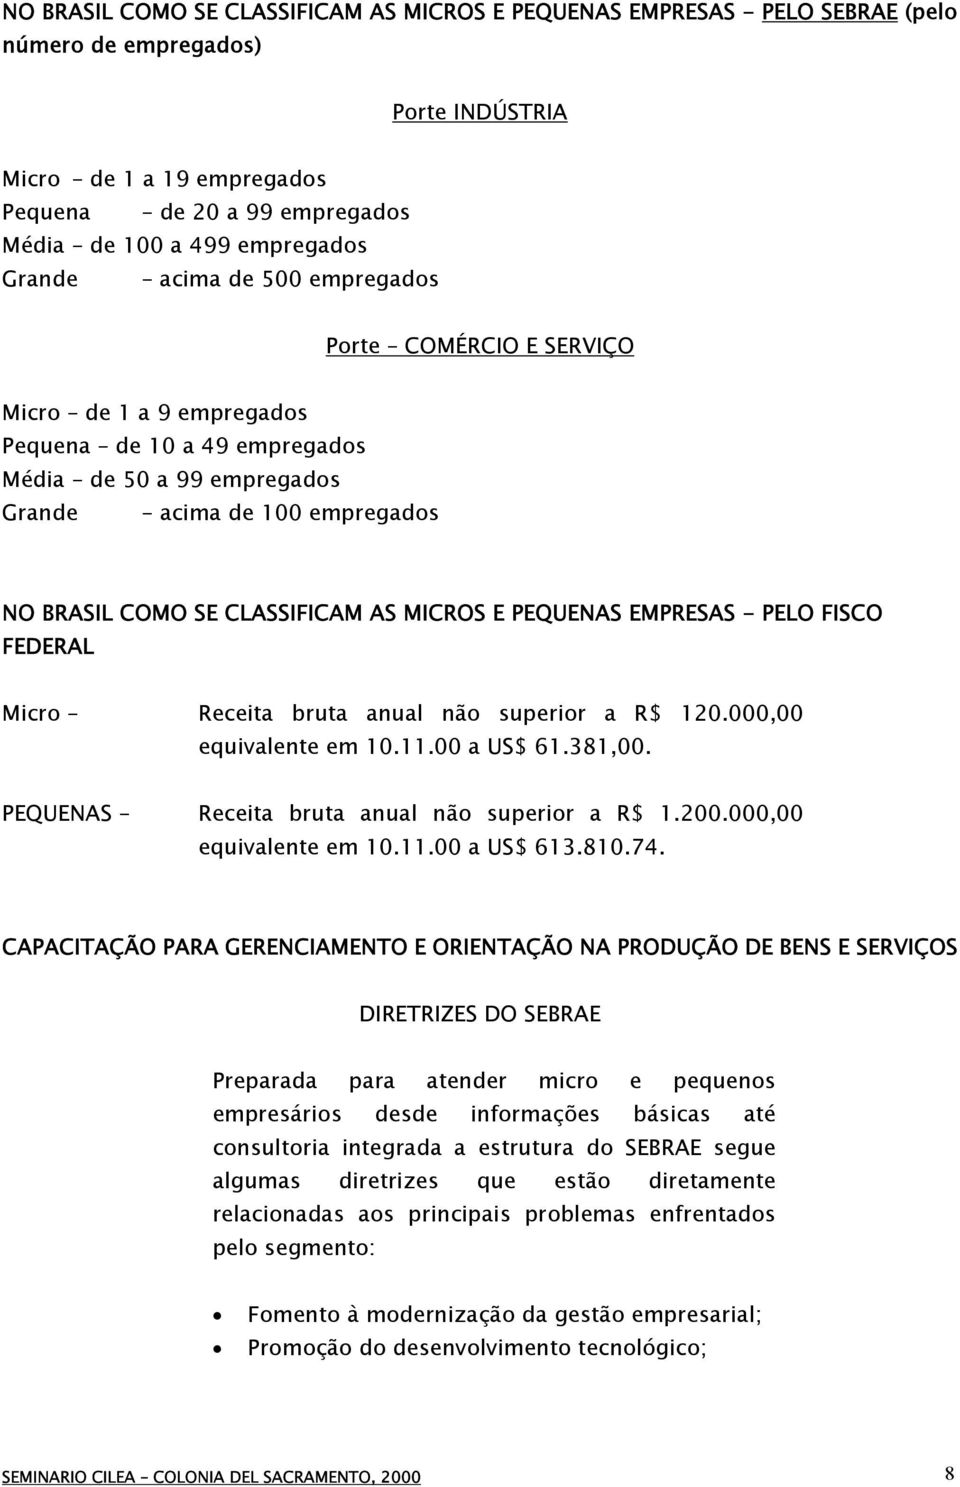 CLASSIFICAM AS MICROS E PEQUENAS EMPRESAS - PELO FISCO FEDERAL Micro Receita bruta anual não superior a R$ 120.000,00 equivalente em 10.11.00 a US$ 61.381,00.